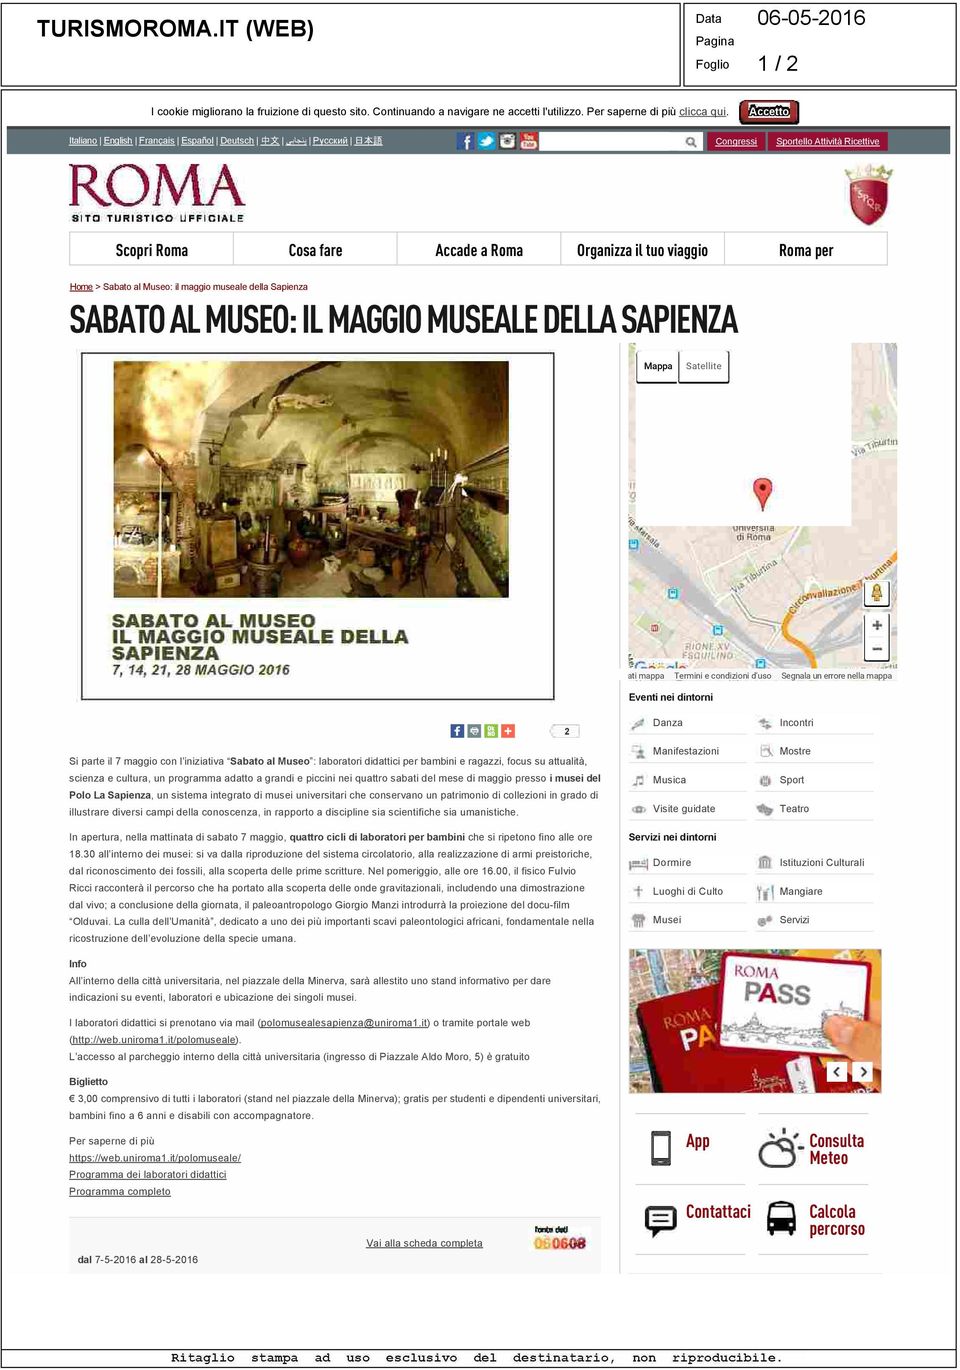 al Museo: il maggio museale della Sapienza SABATO AL MUSEO: IL MAGGIO MUSEALE DELLA SAPIENZA Mappa Satellite Dati mappa Termini e condizioni d'uso Segnala un errore nella mappa 2 Si parte il 7 maggio